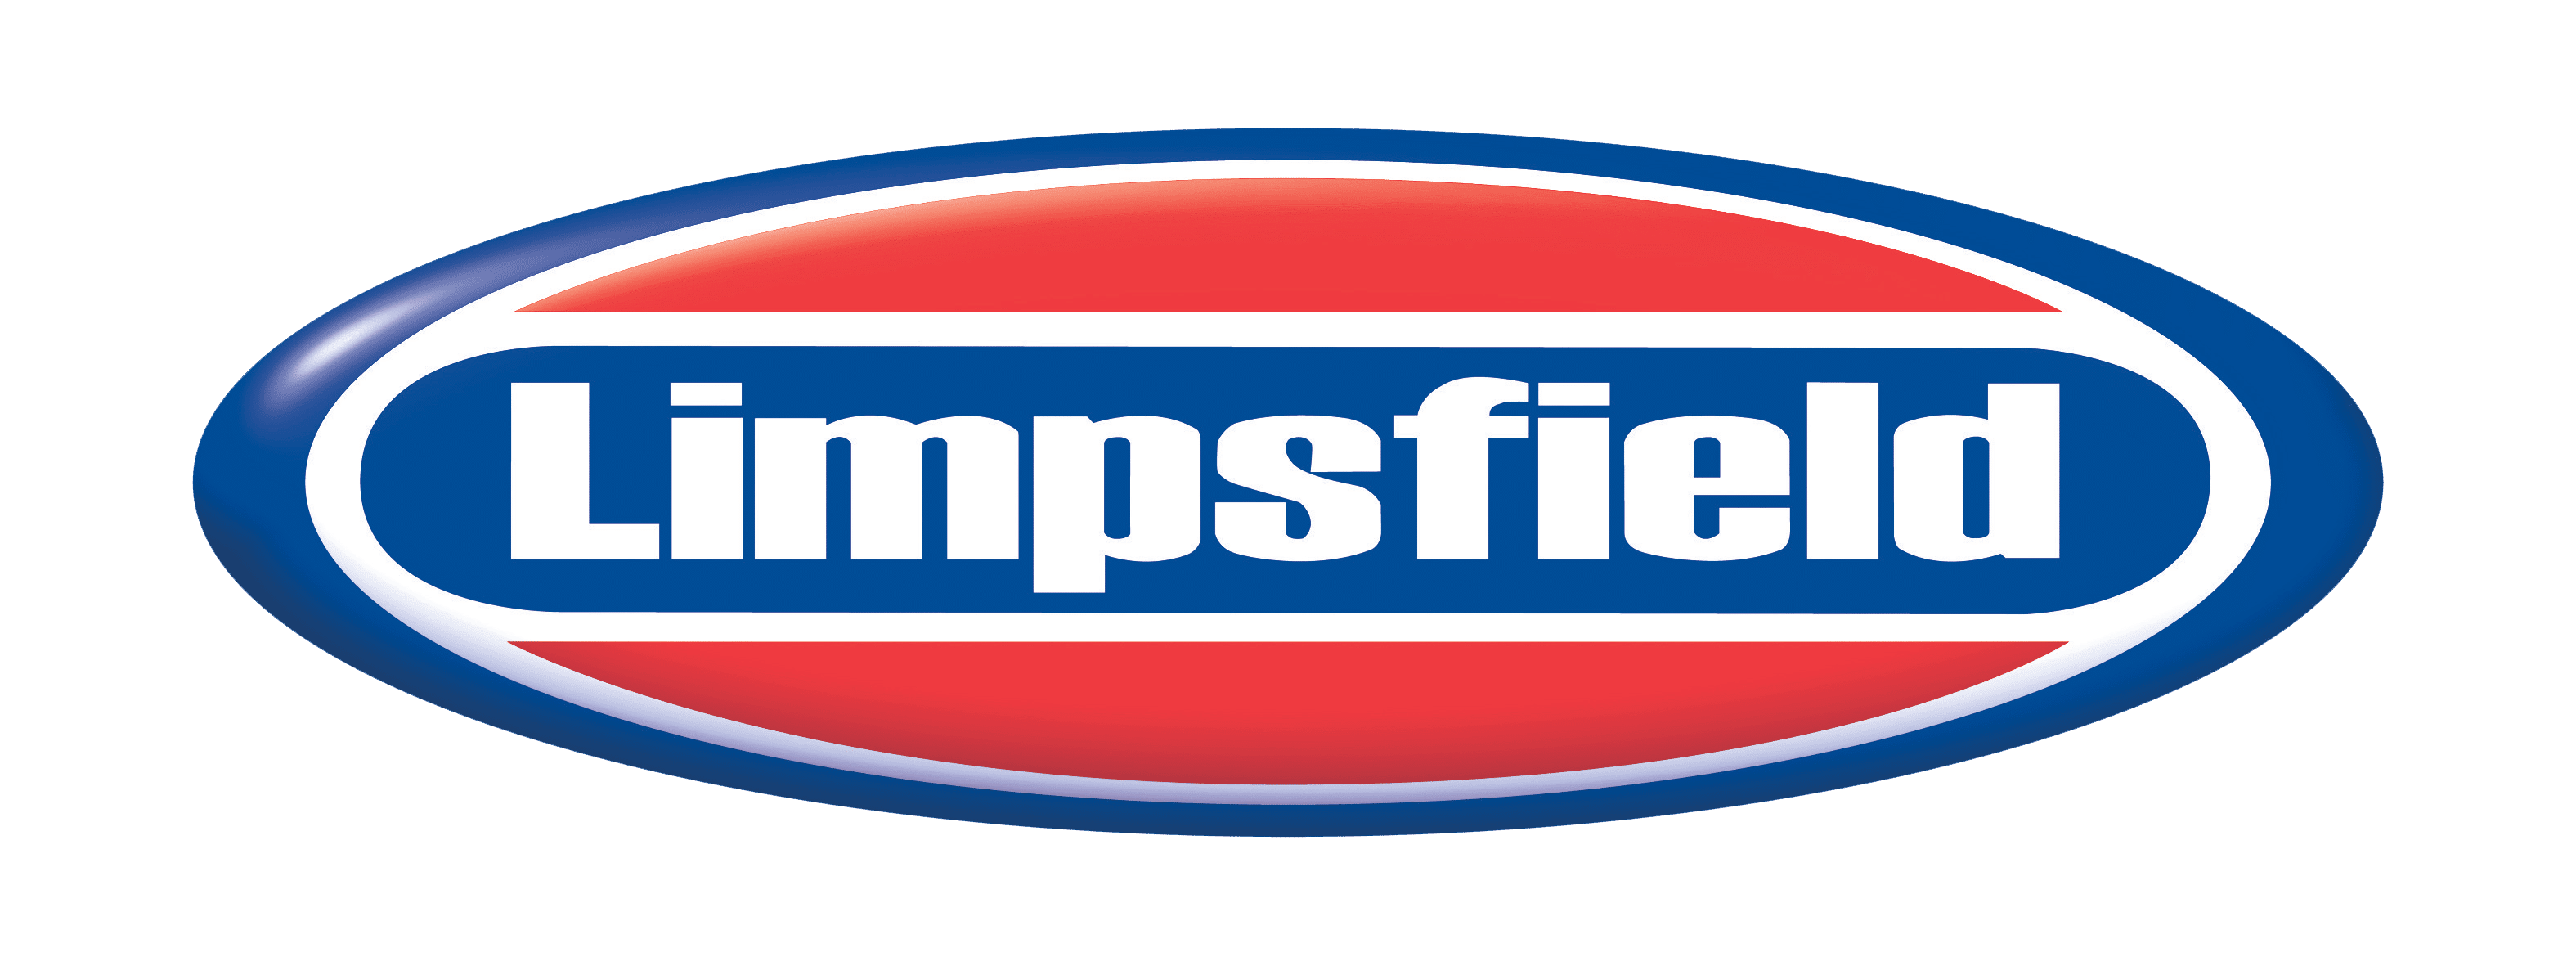 Limpsfield